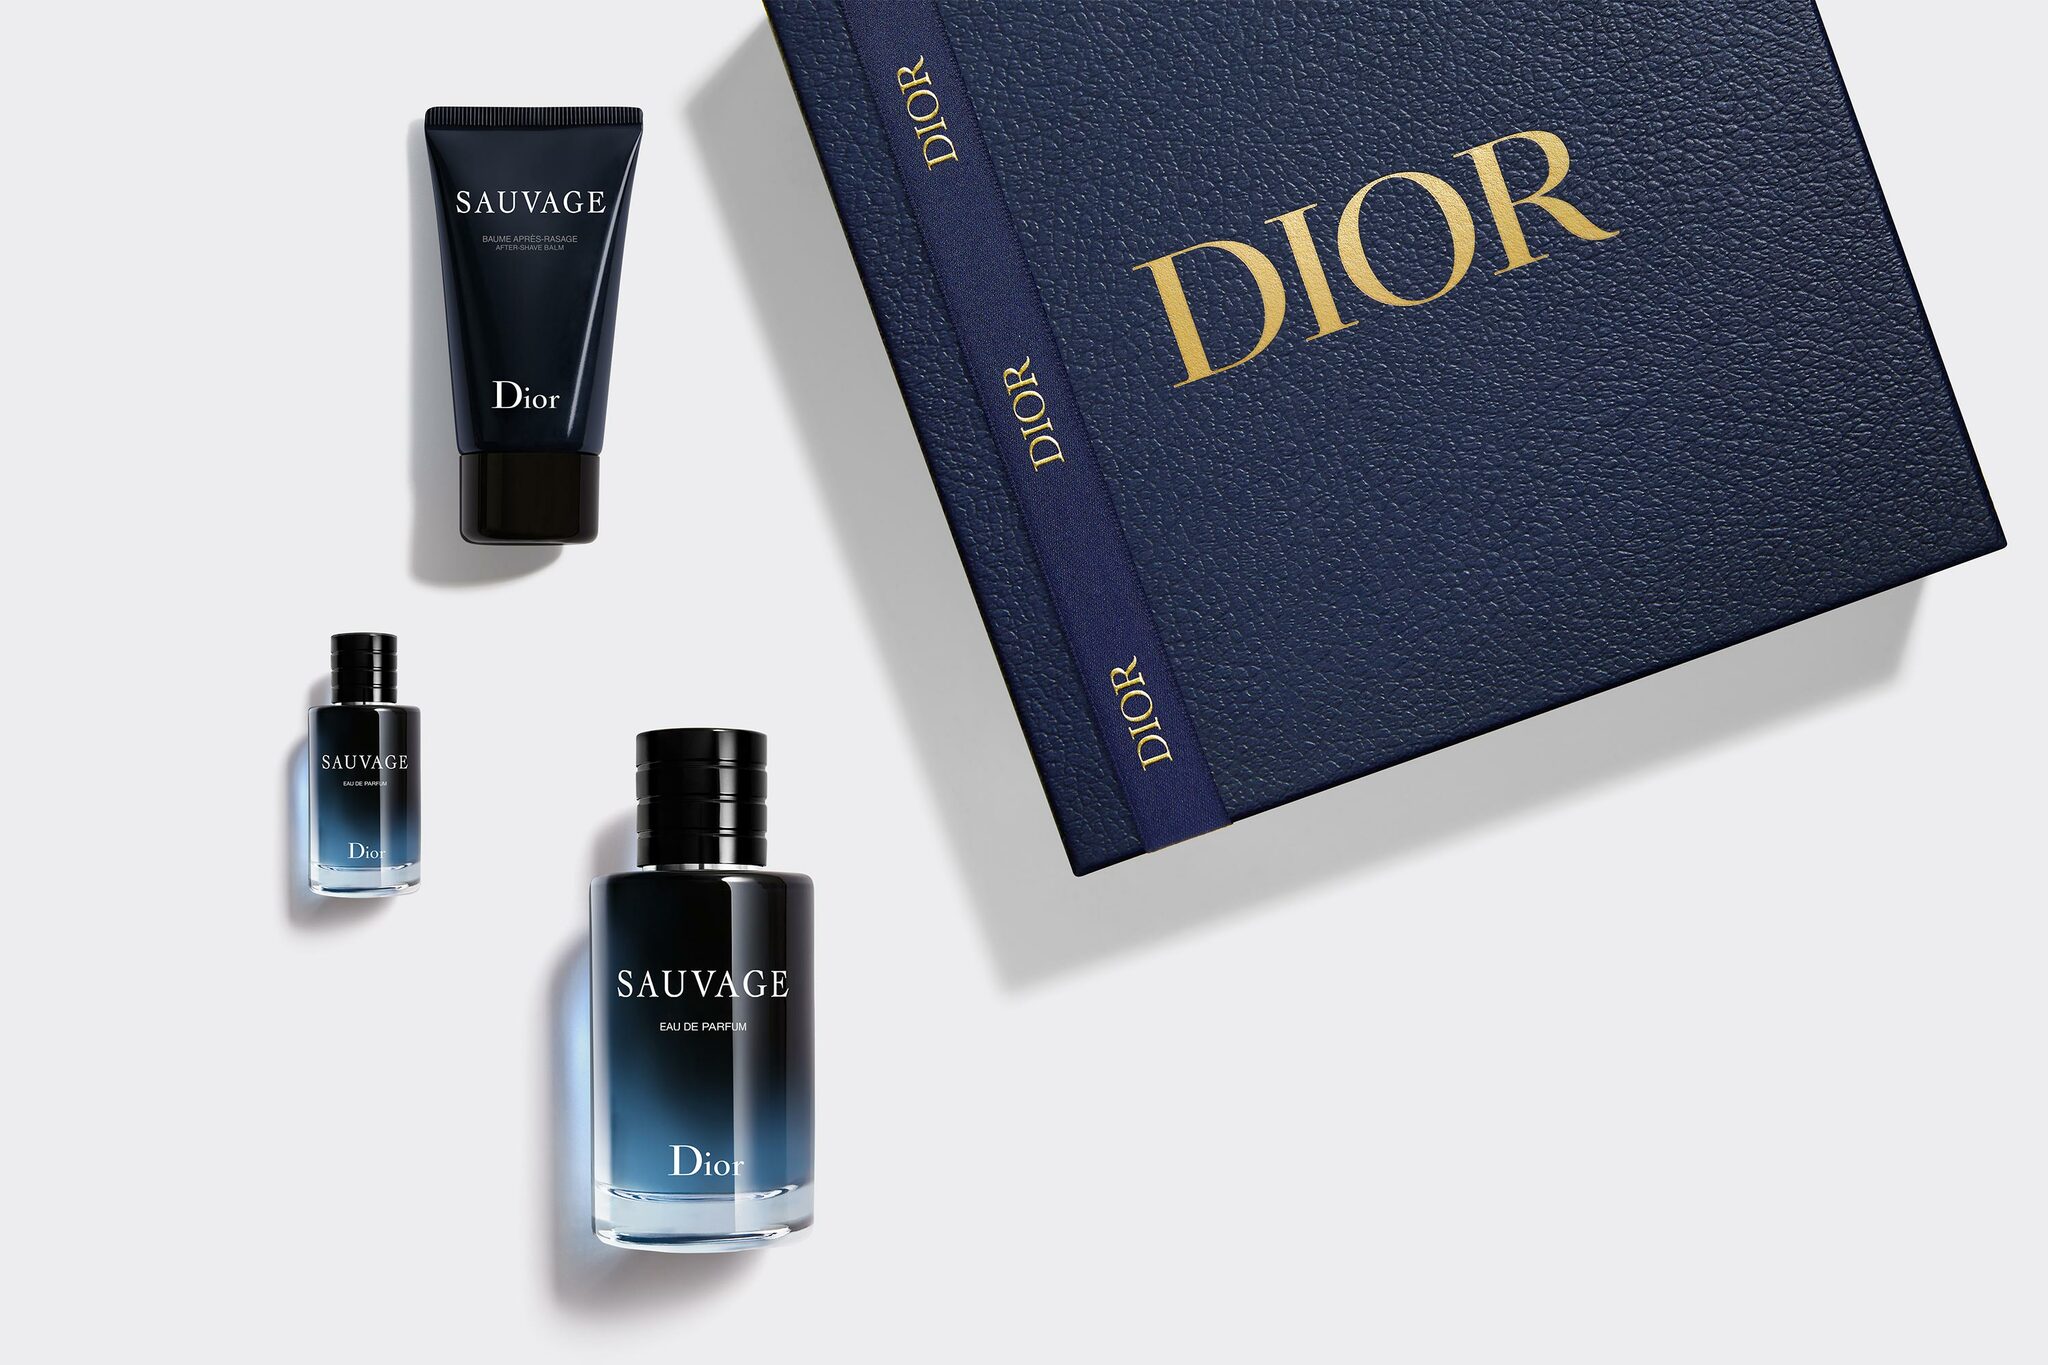 Capture Totale  Официальный онлайнбутик Dior  Dior  официальный интернет магазин парфюмерии и косметики Диор в России